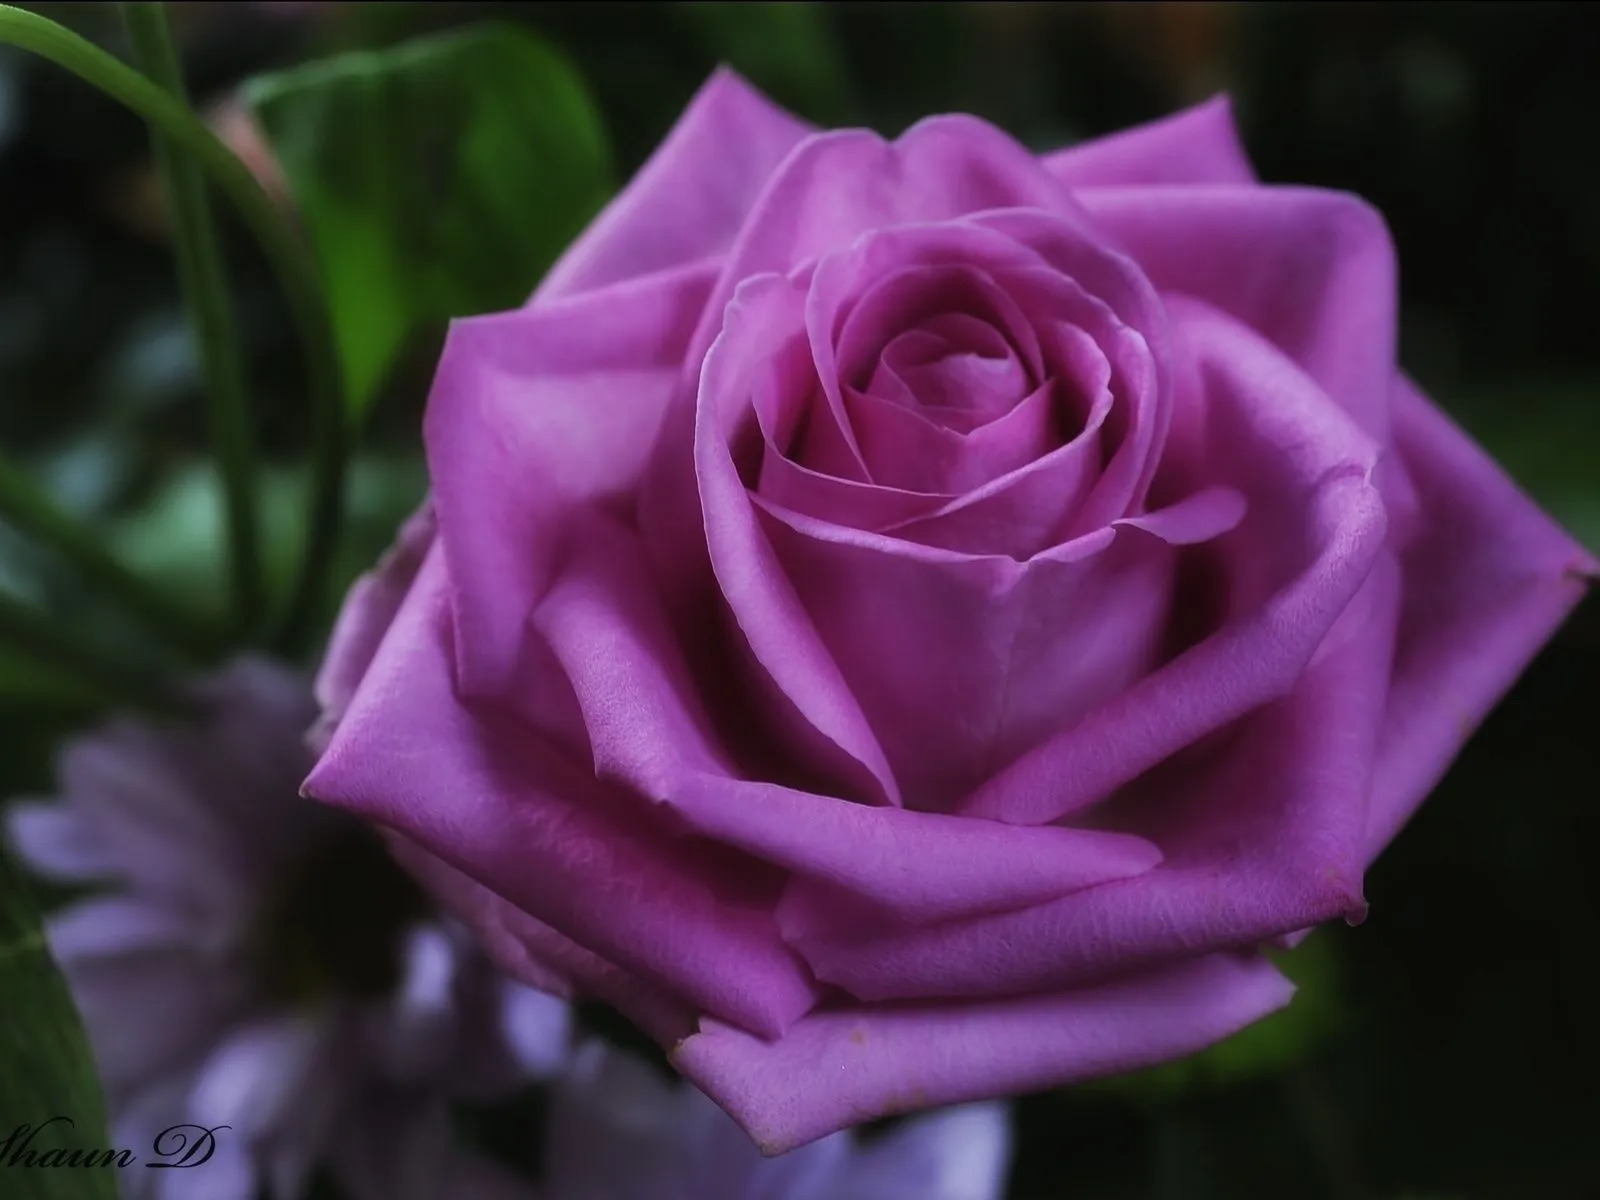 Galería de Imágenes y Fotos Bonitas: Hermosas rosas lilas para ...